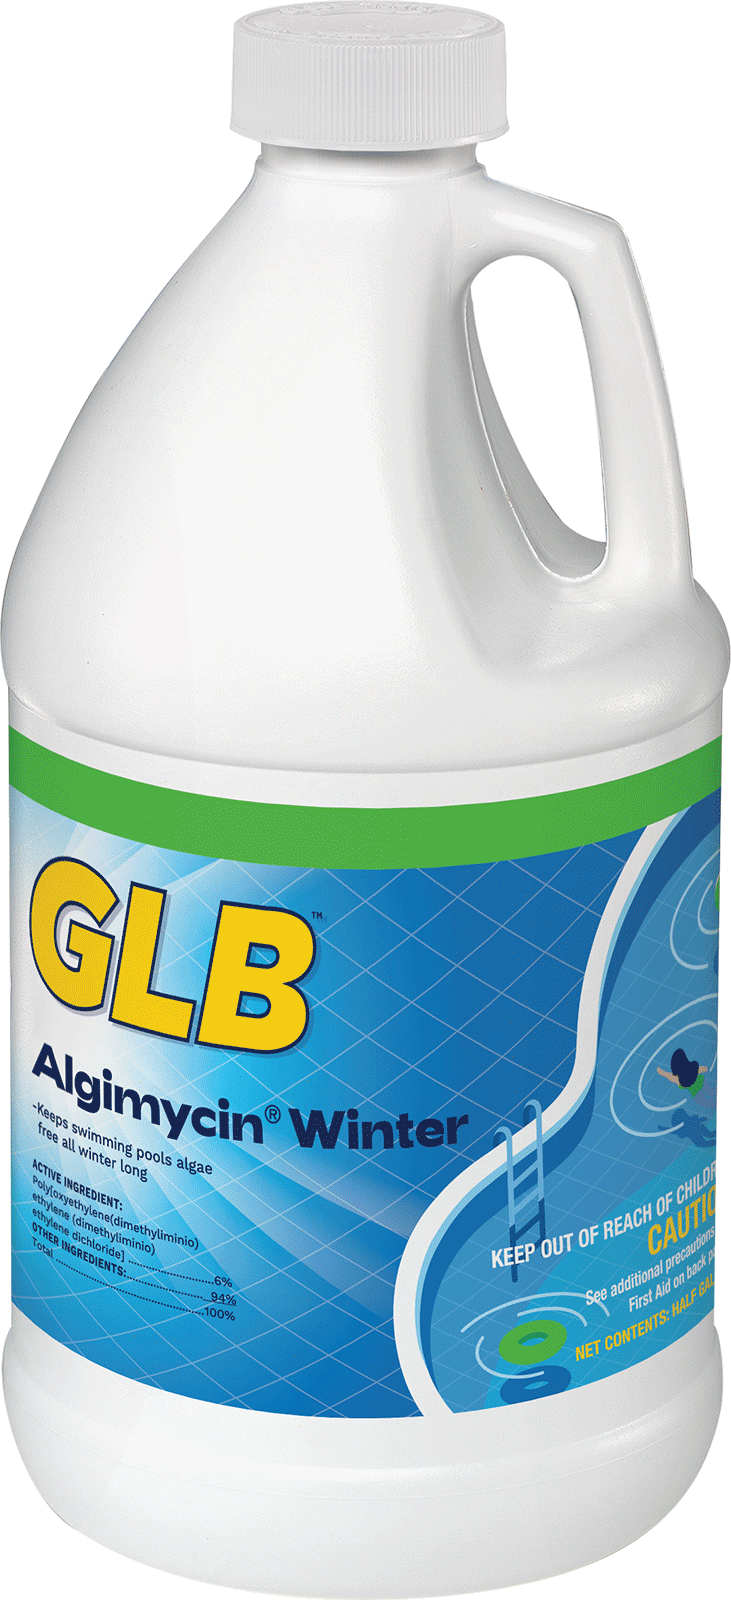 GLB - Algimycin Winter Algaecide - 1/2 Gallon - Item #71110A